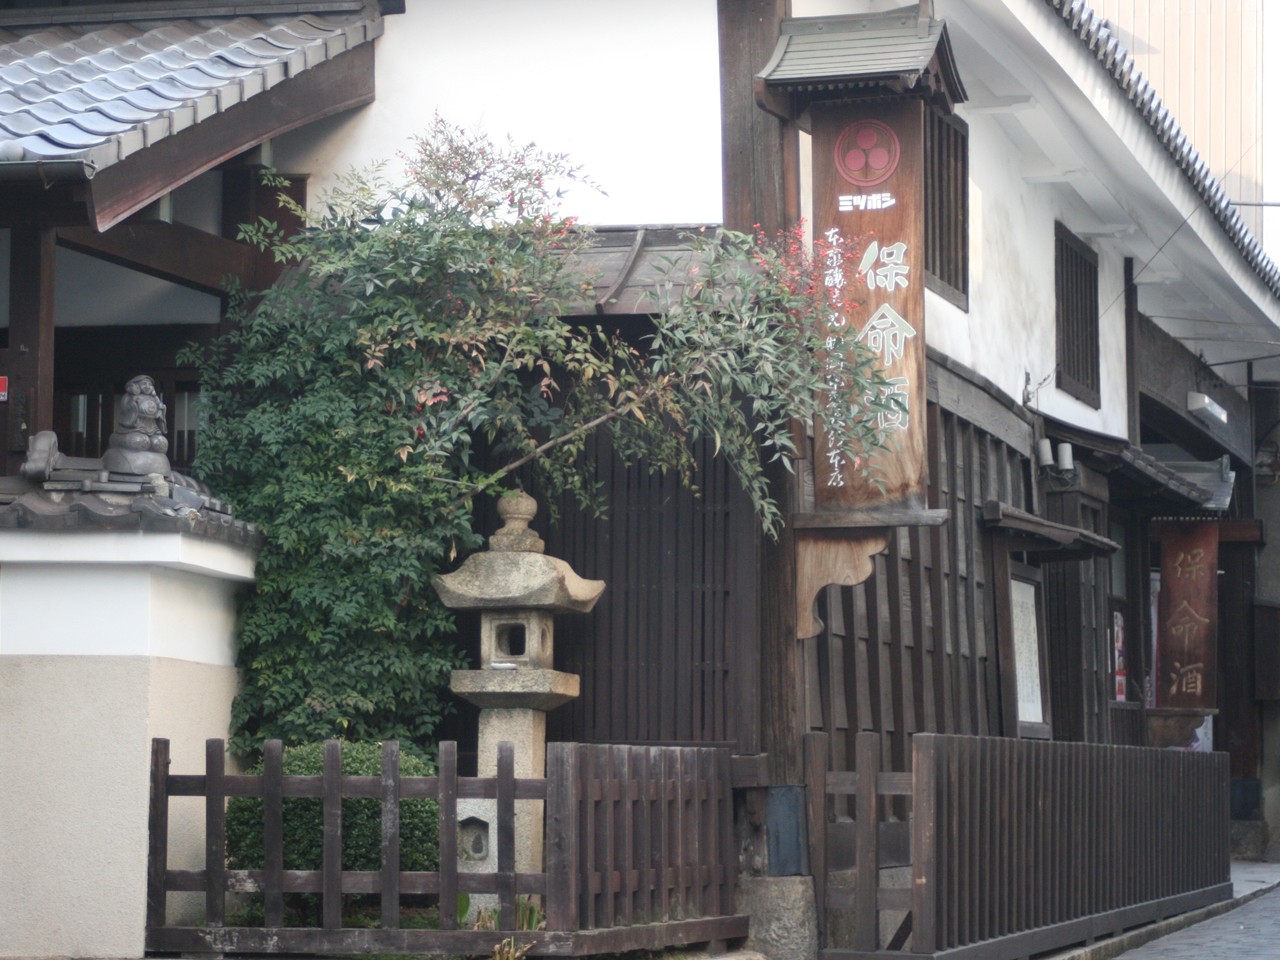 福山城長屋門を移築した店舗で、市の重要文化財。
現在は「岡本家長屋門」とも。